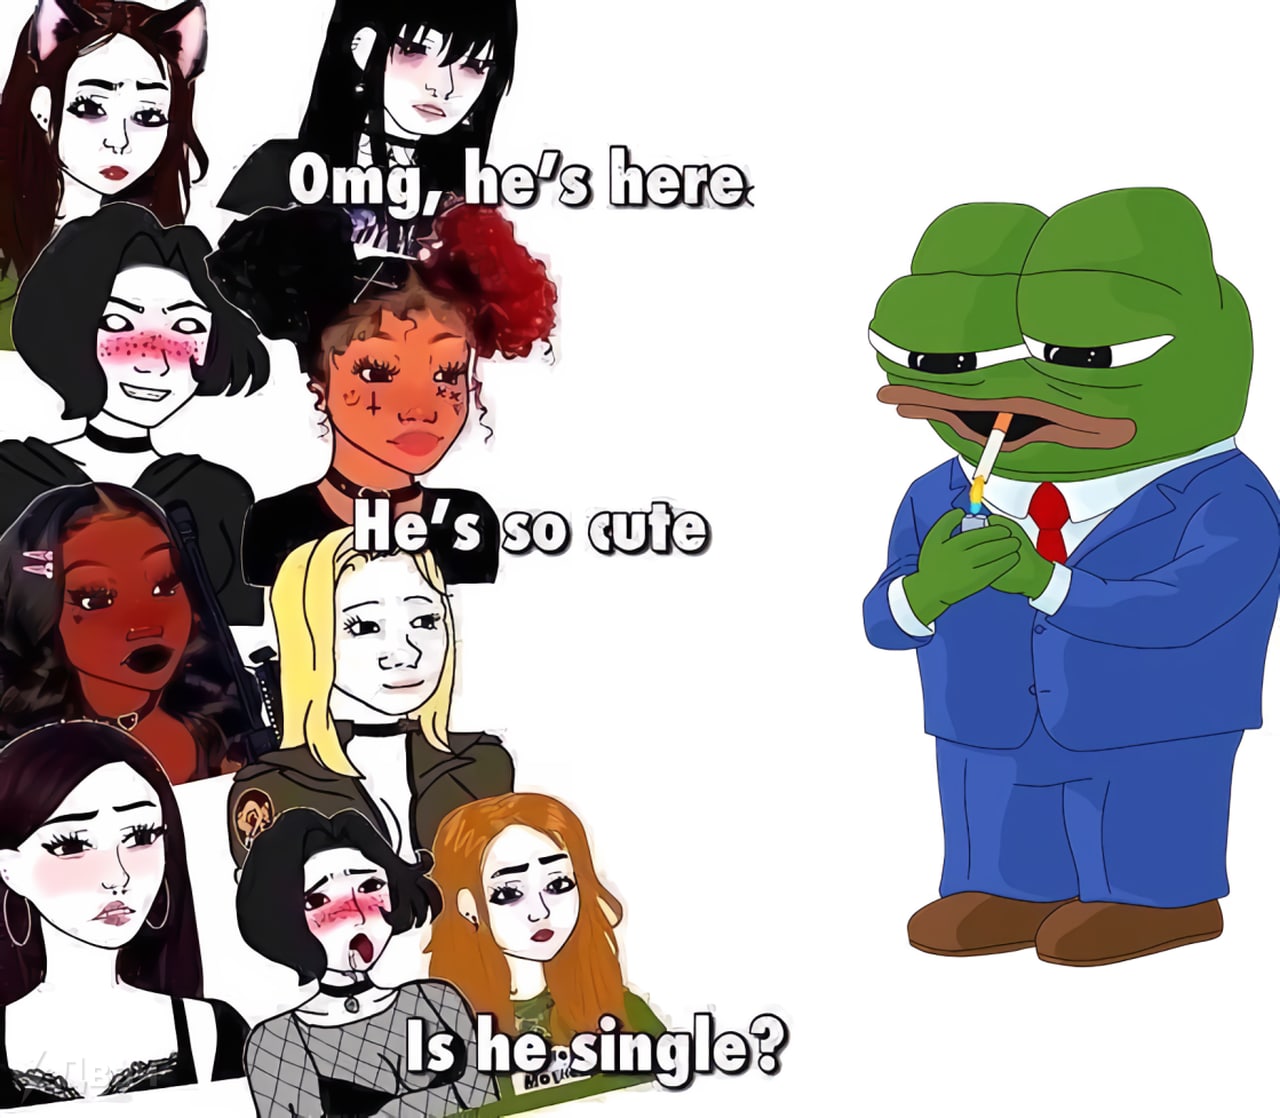 OMG he's here - Is he single? - Pepe - Pepe The Frog